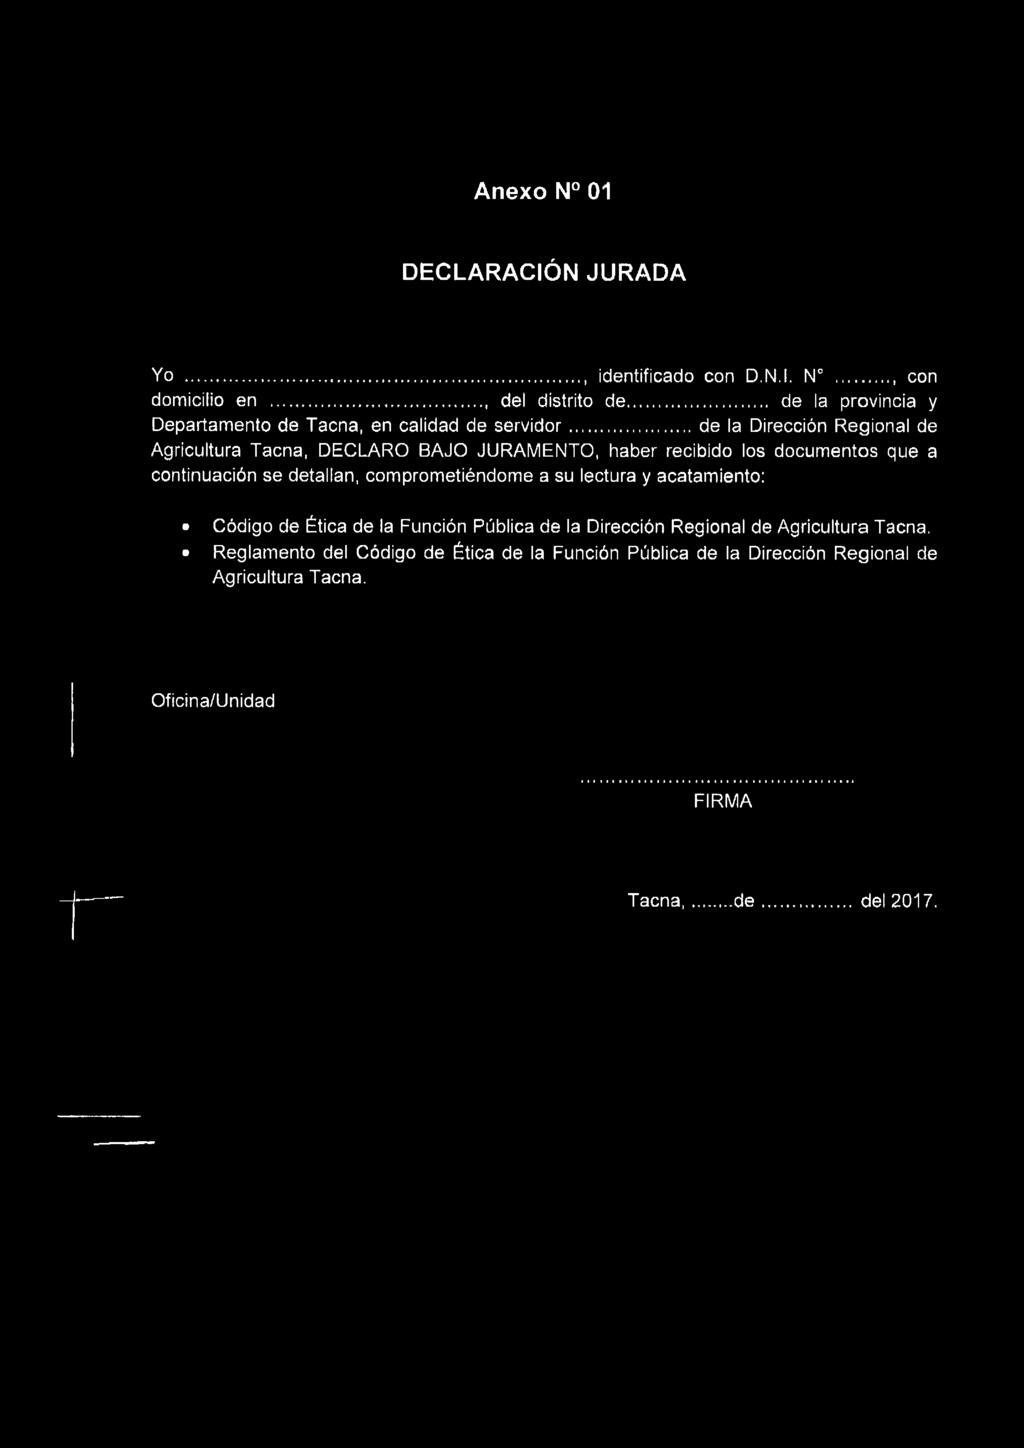 .. de la Dirección Regional de Agricultura Tacna, DECLARO BAJO JURAMENTO, haber recibido los documentos que a continuación se detallan,